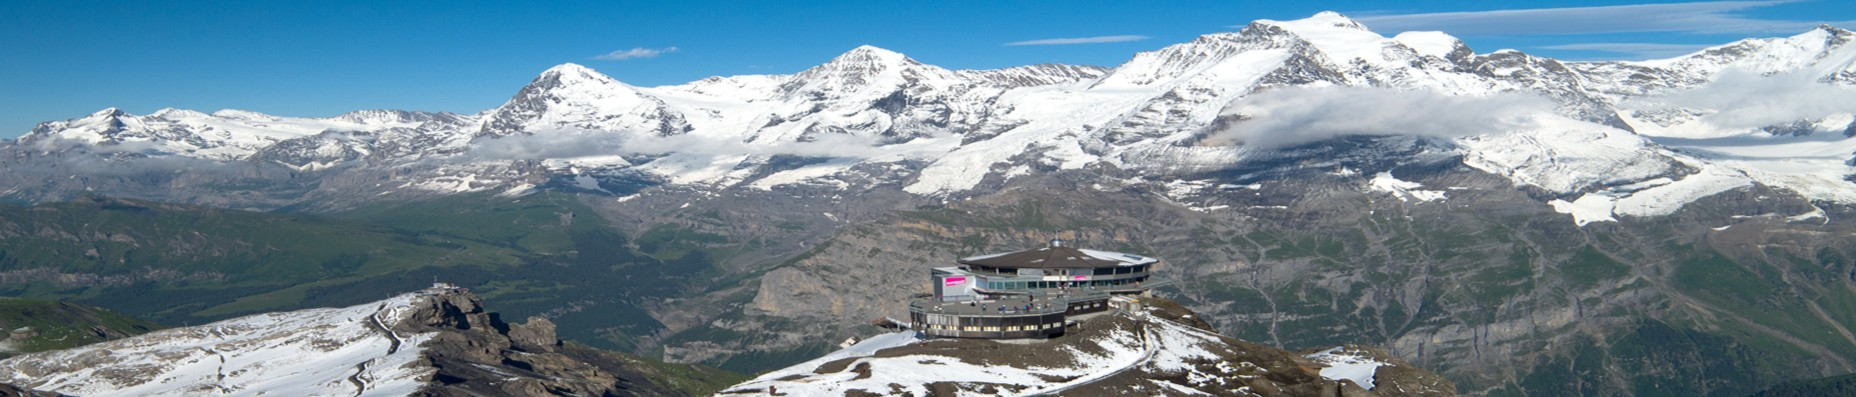 Nirgends präsentiert sich Ihnen das spektakuläre Panorama des Berner Oberlandes so wahrhaft und hautnah wie auf dieser Aussichtsplattform auf fast 3000